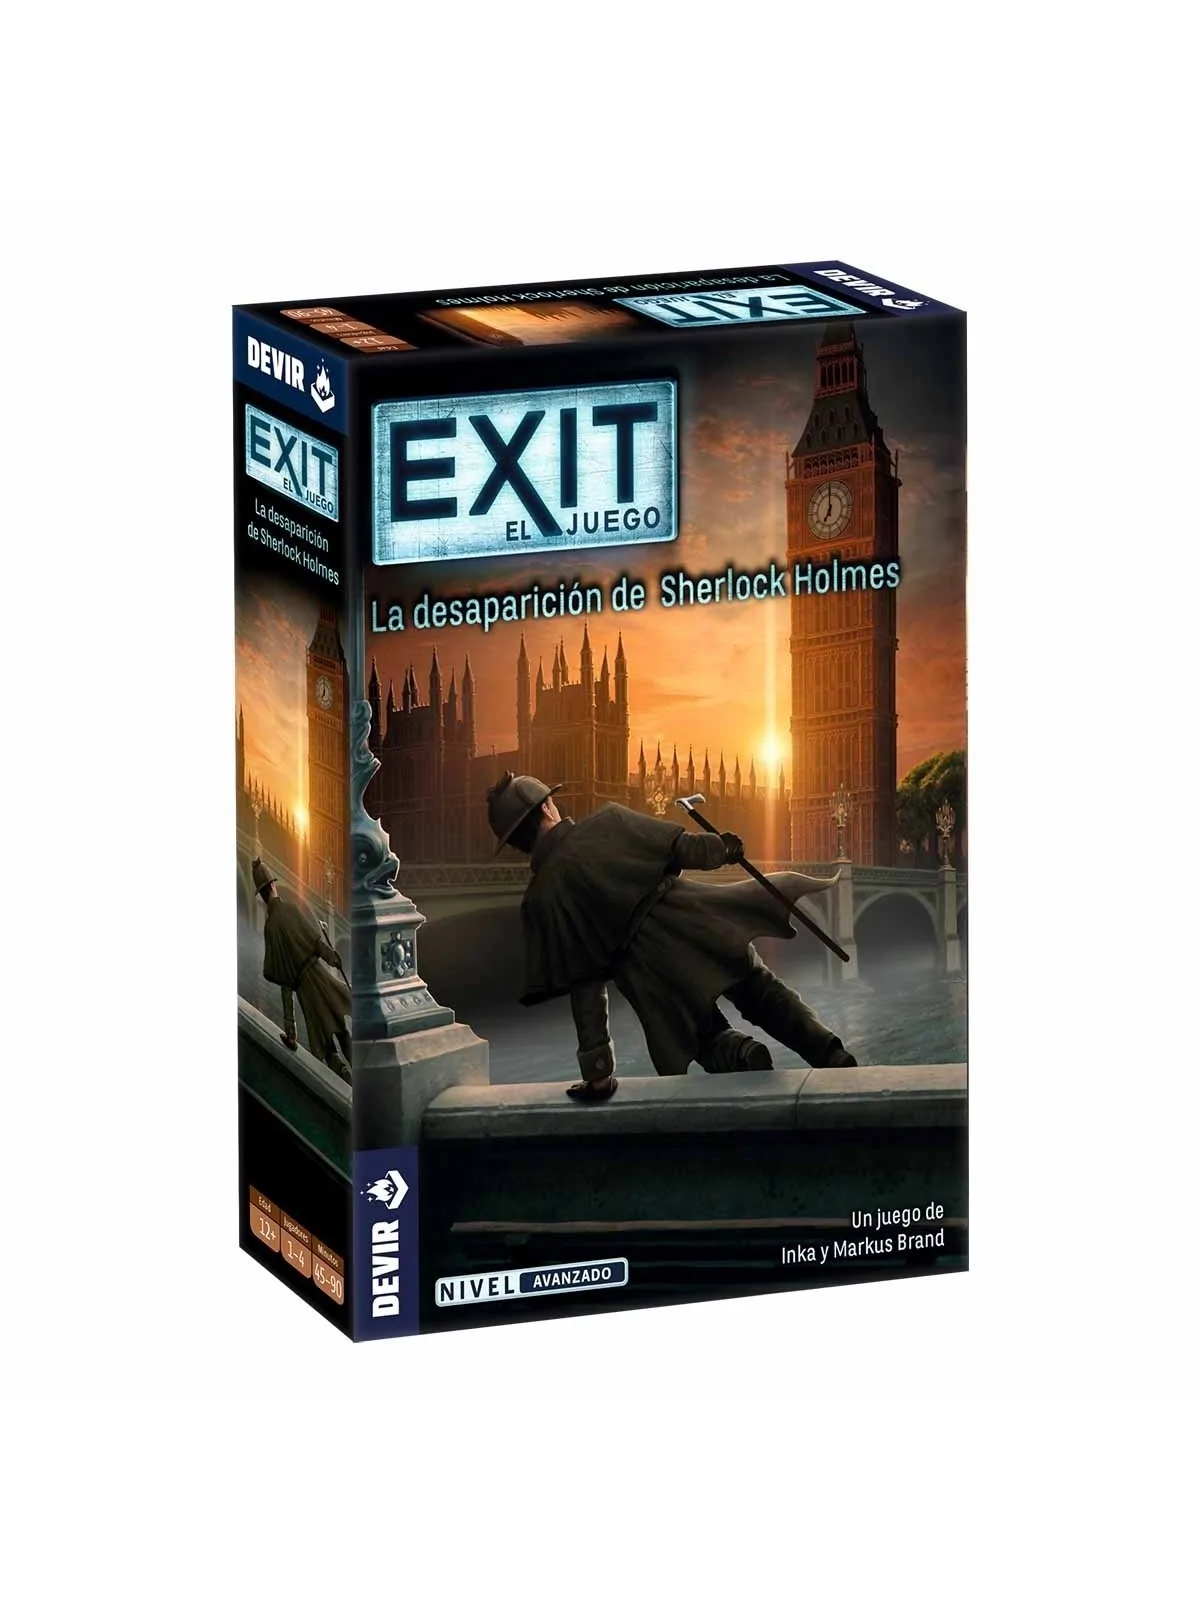 Comprar Exit: La Desaparicion de Sherlock Holmes barato al mejor preci